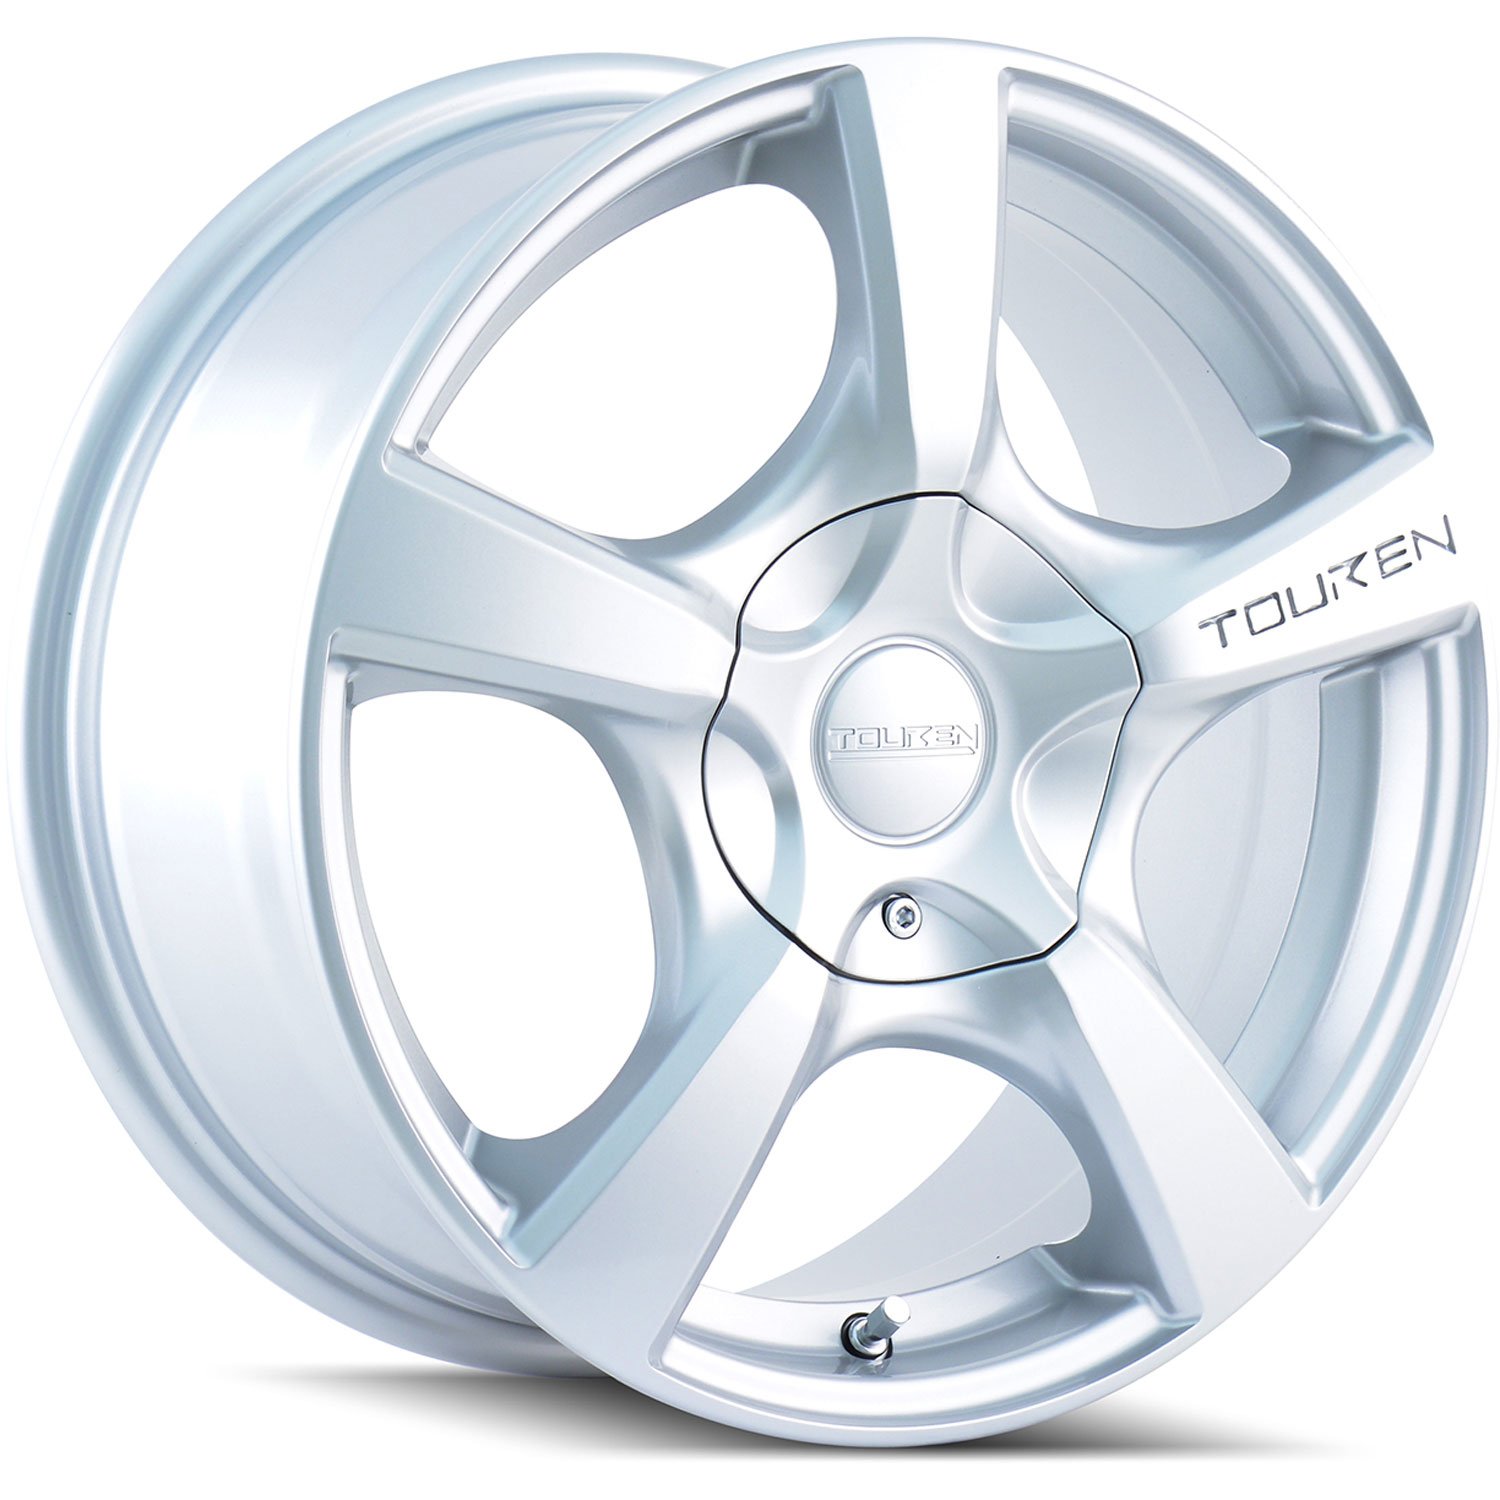 Touren TR9 Series Wheel Size: 19" x 8.5" Bolt Circle: 5 x 108mm/4.5"